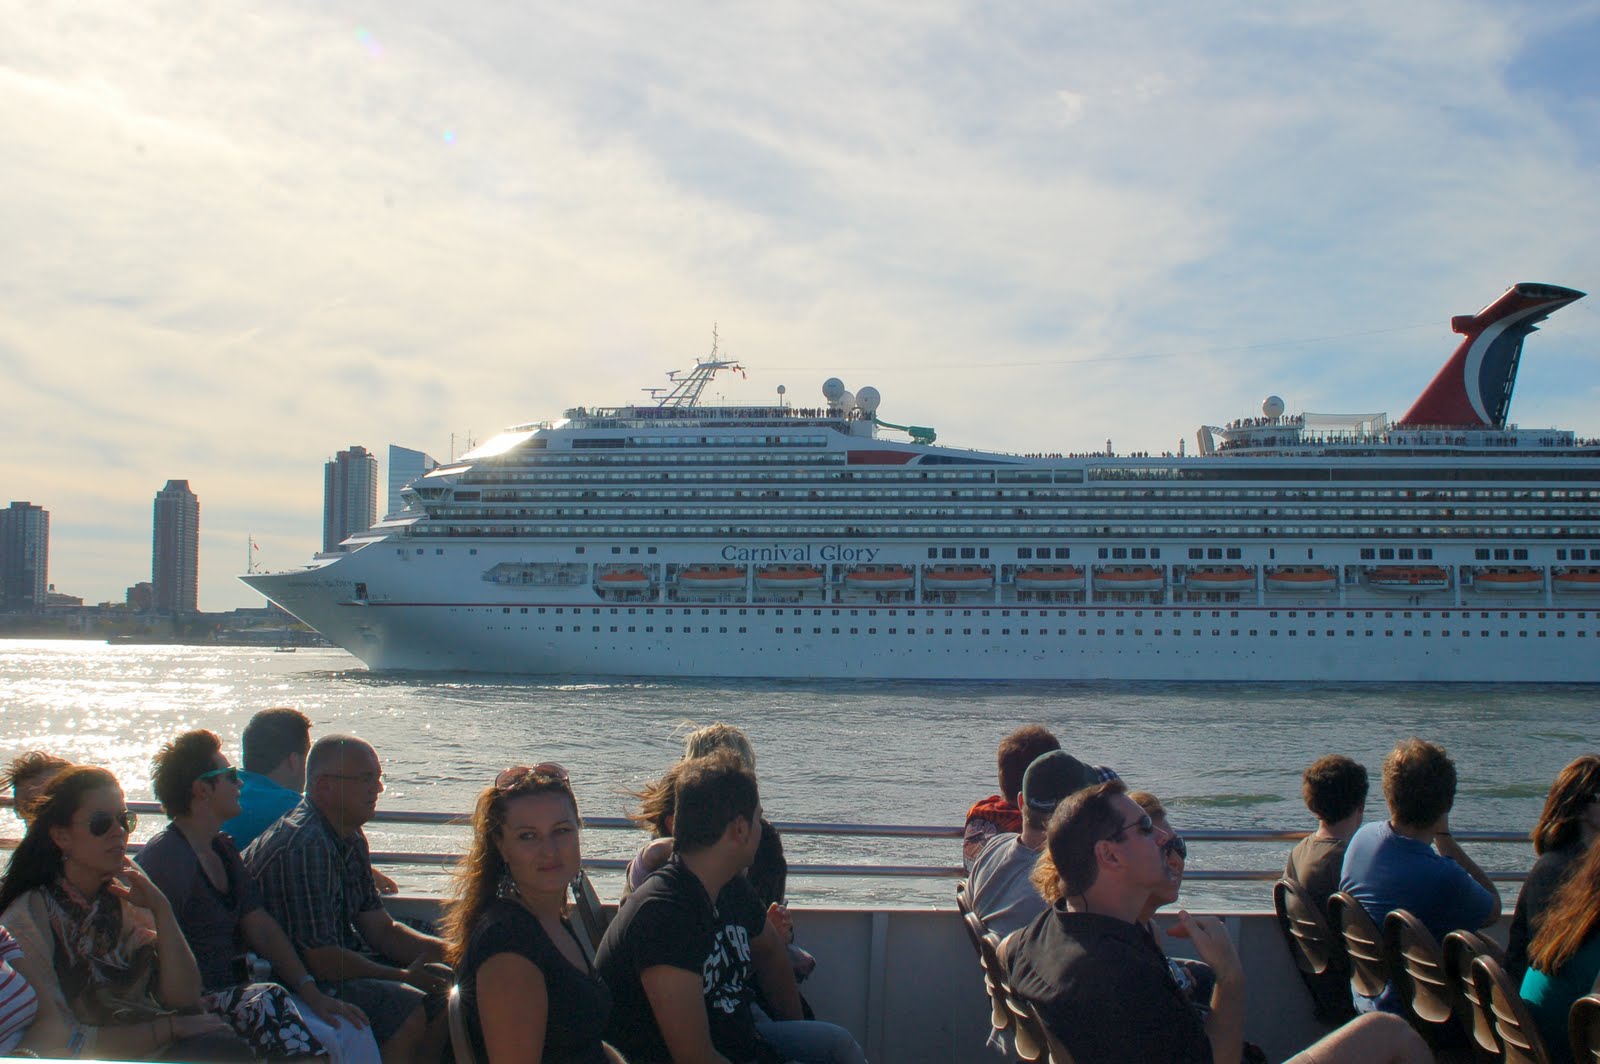 cruise ships in ny harbor today